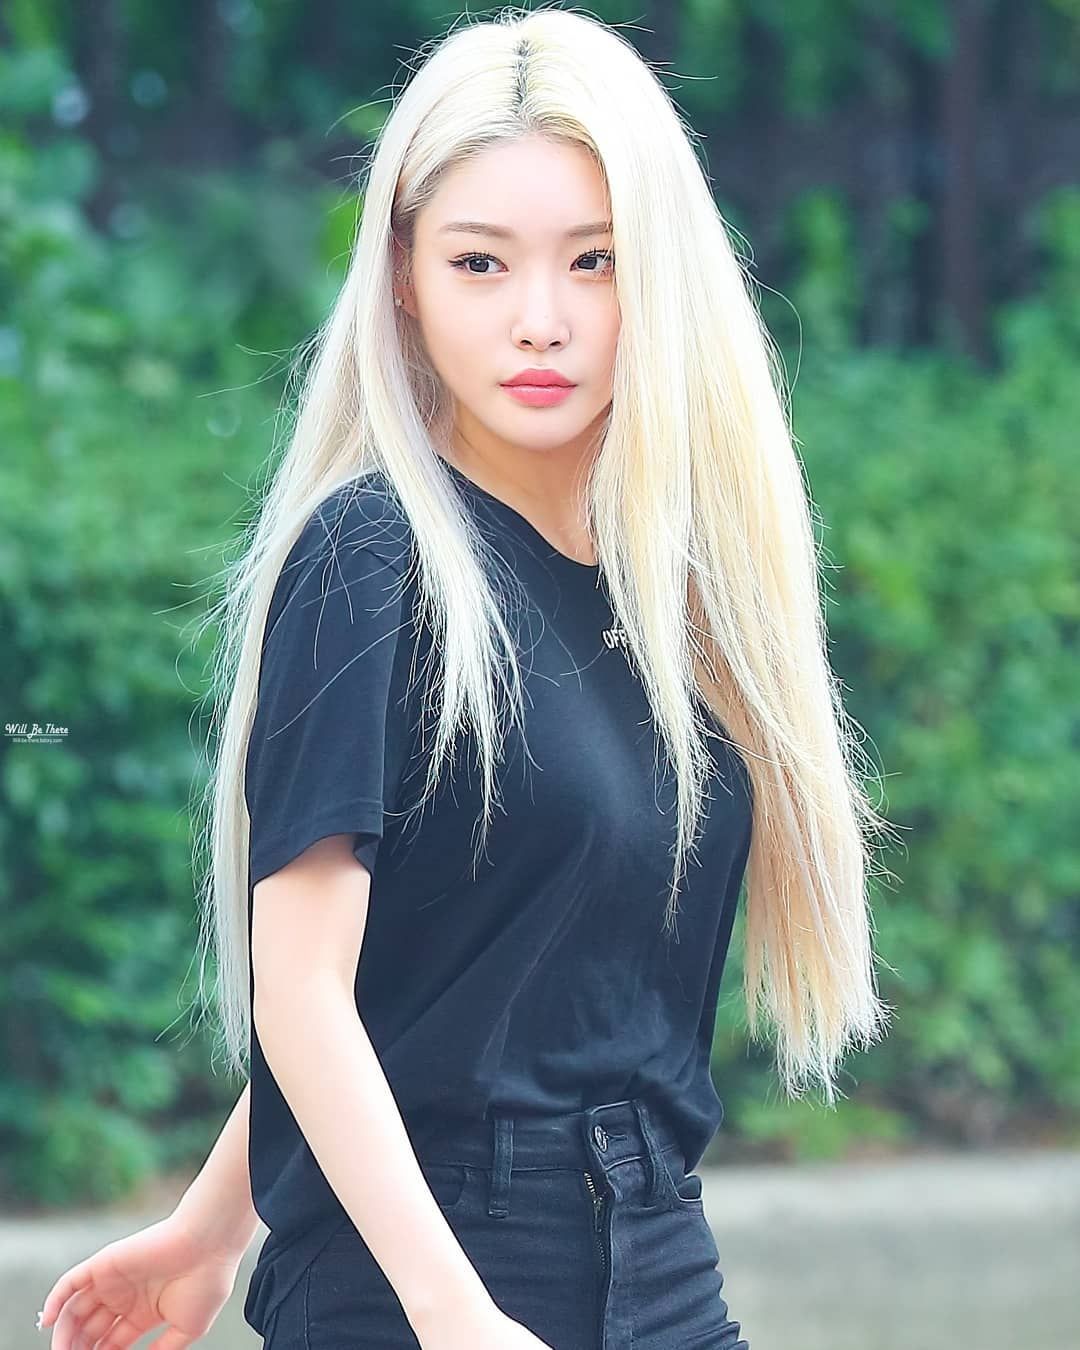 Asian virgin outdoor blonde